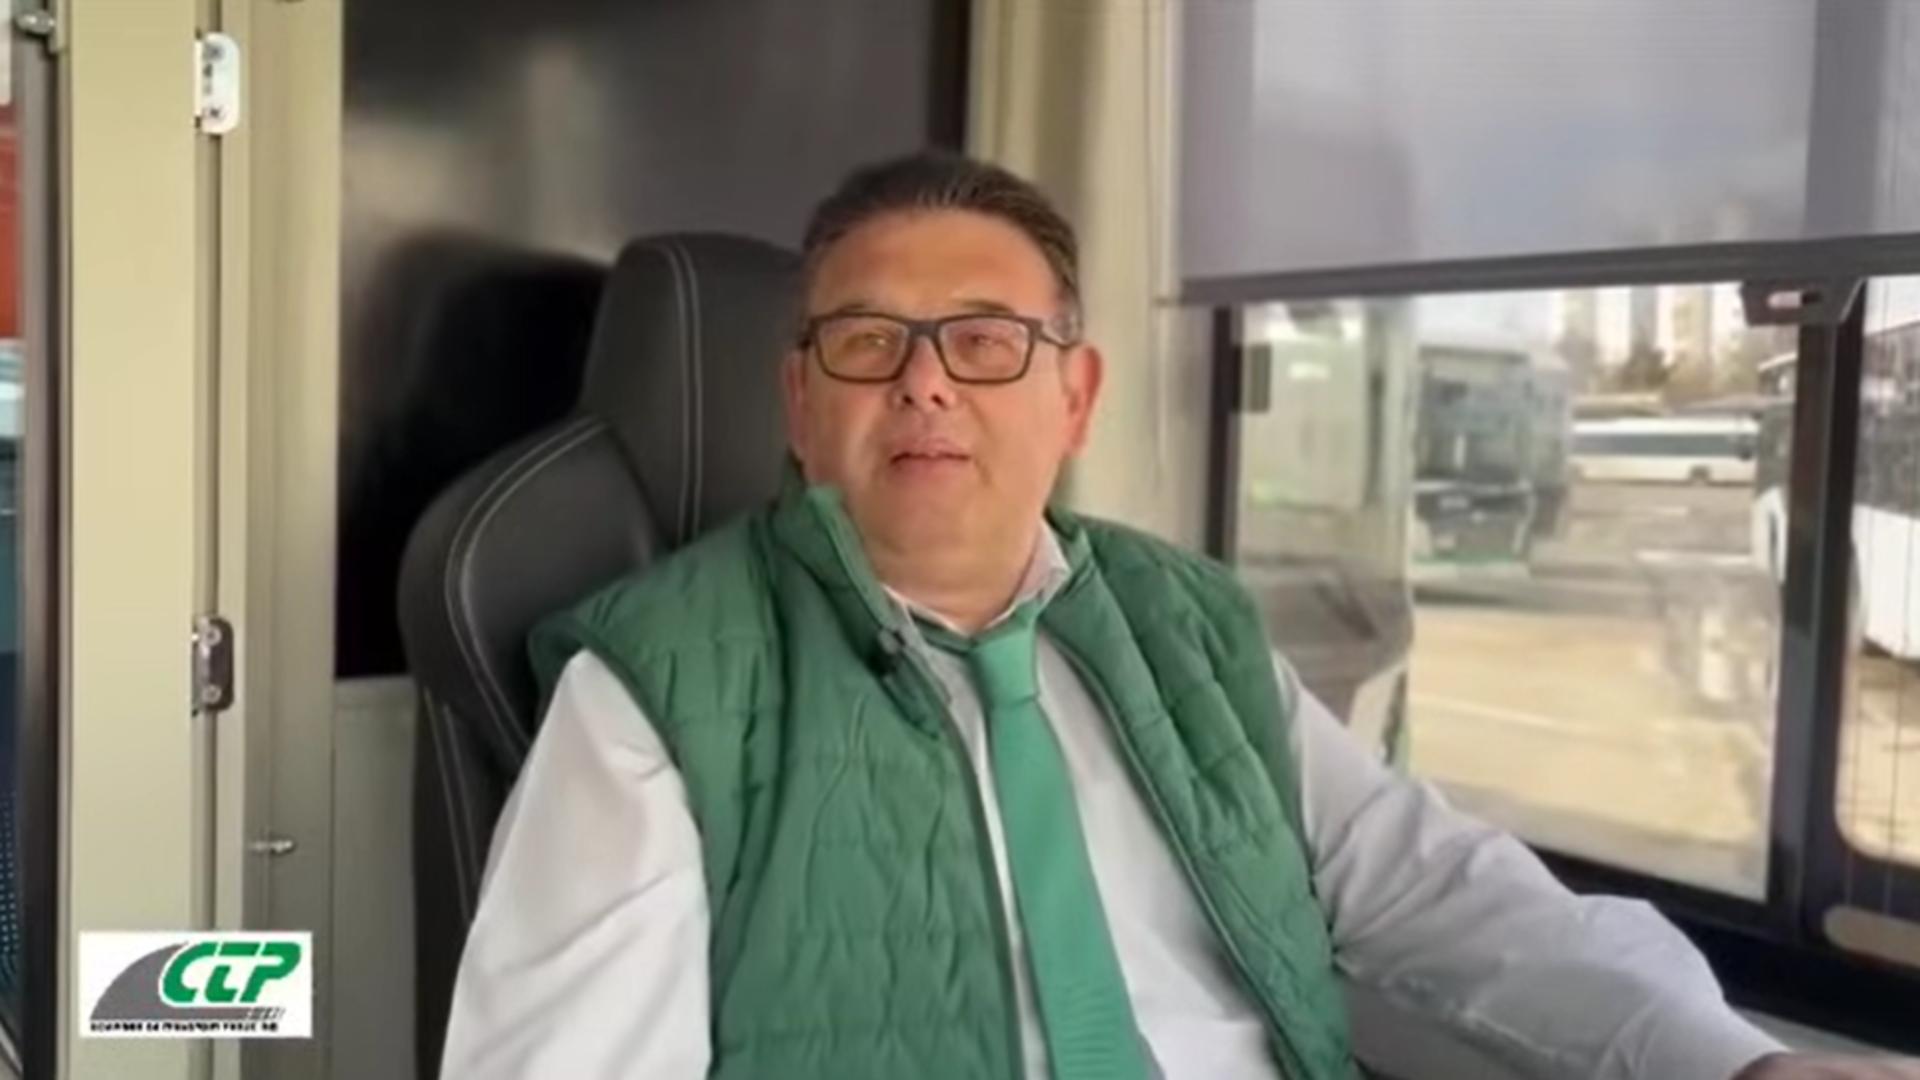 Mărturia surprinzătoare a unui italian, șofer de autobuz în Iași: ”Șoferii sunt mai respectați aici, față de Italia”